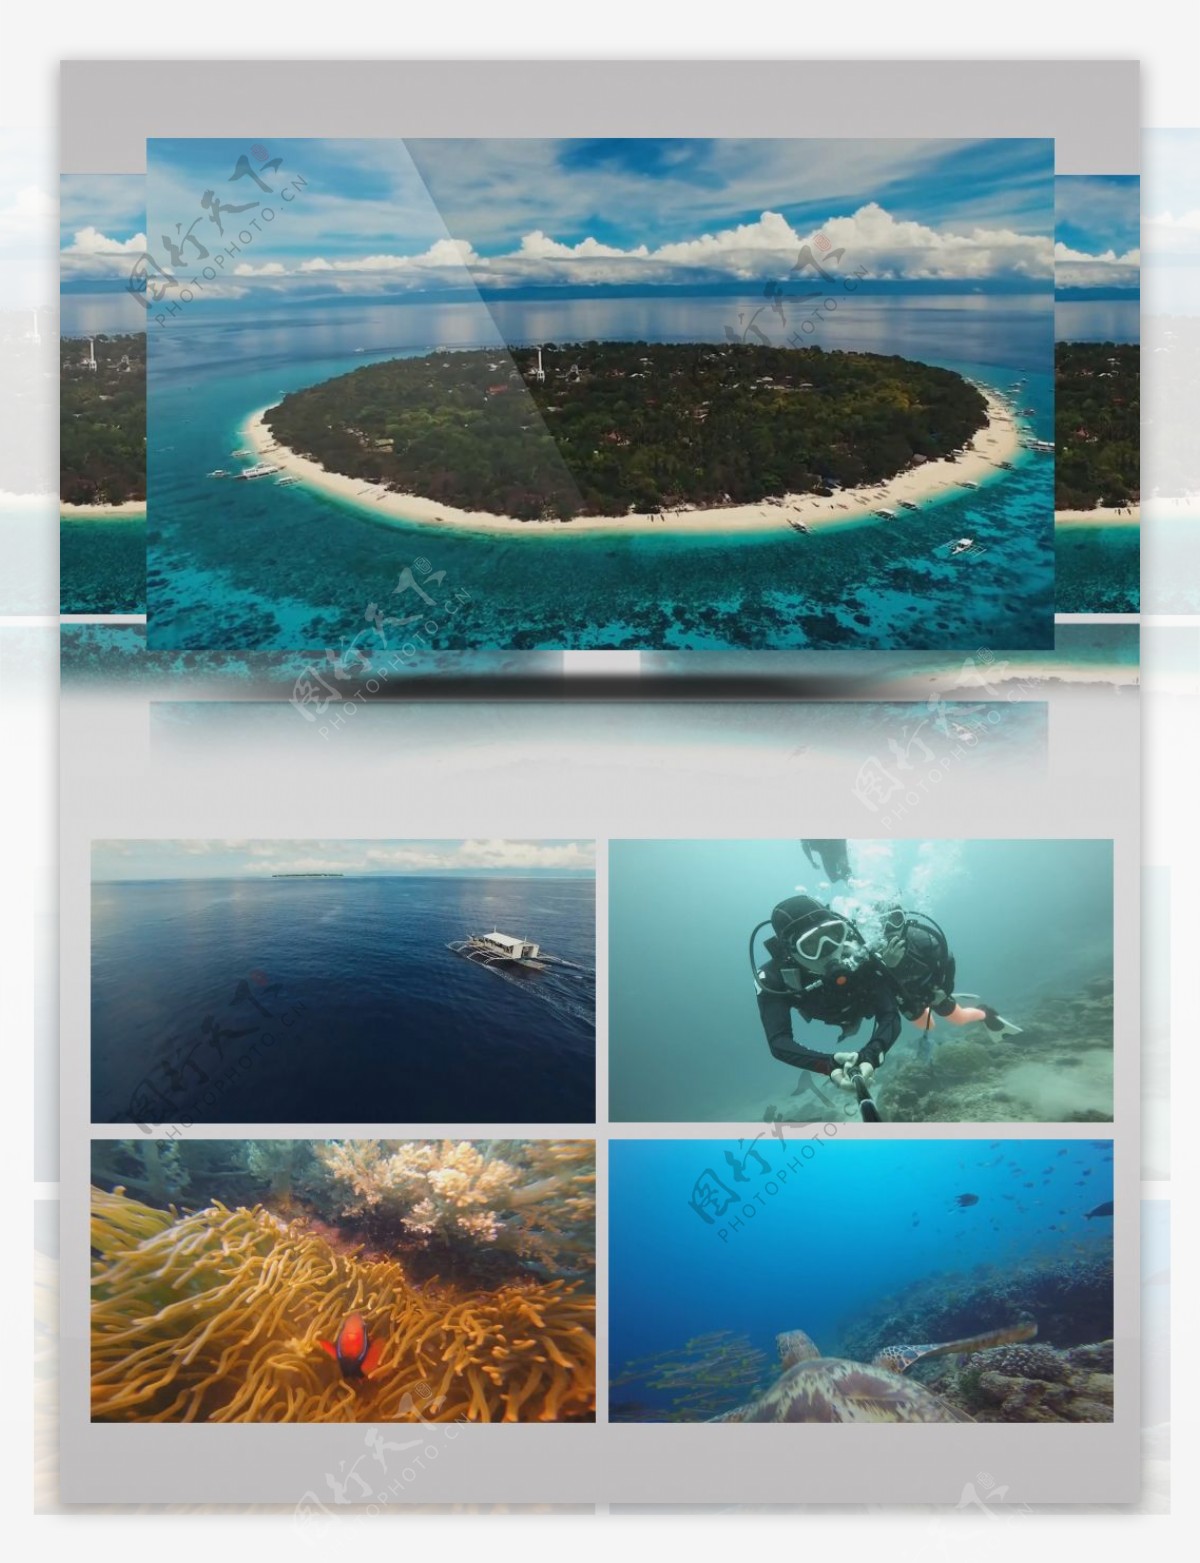 菲律宾薄荷岛旅游景点潜水唯美风光镜头